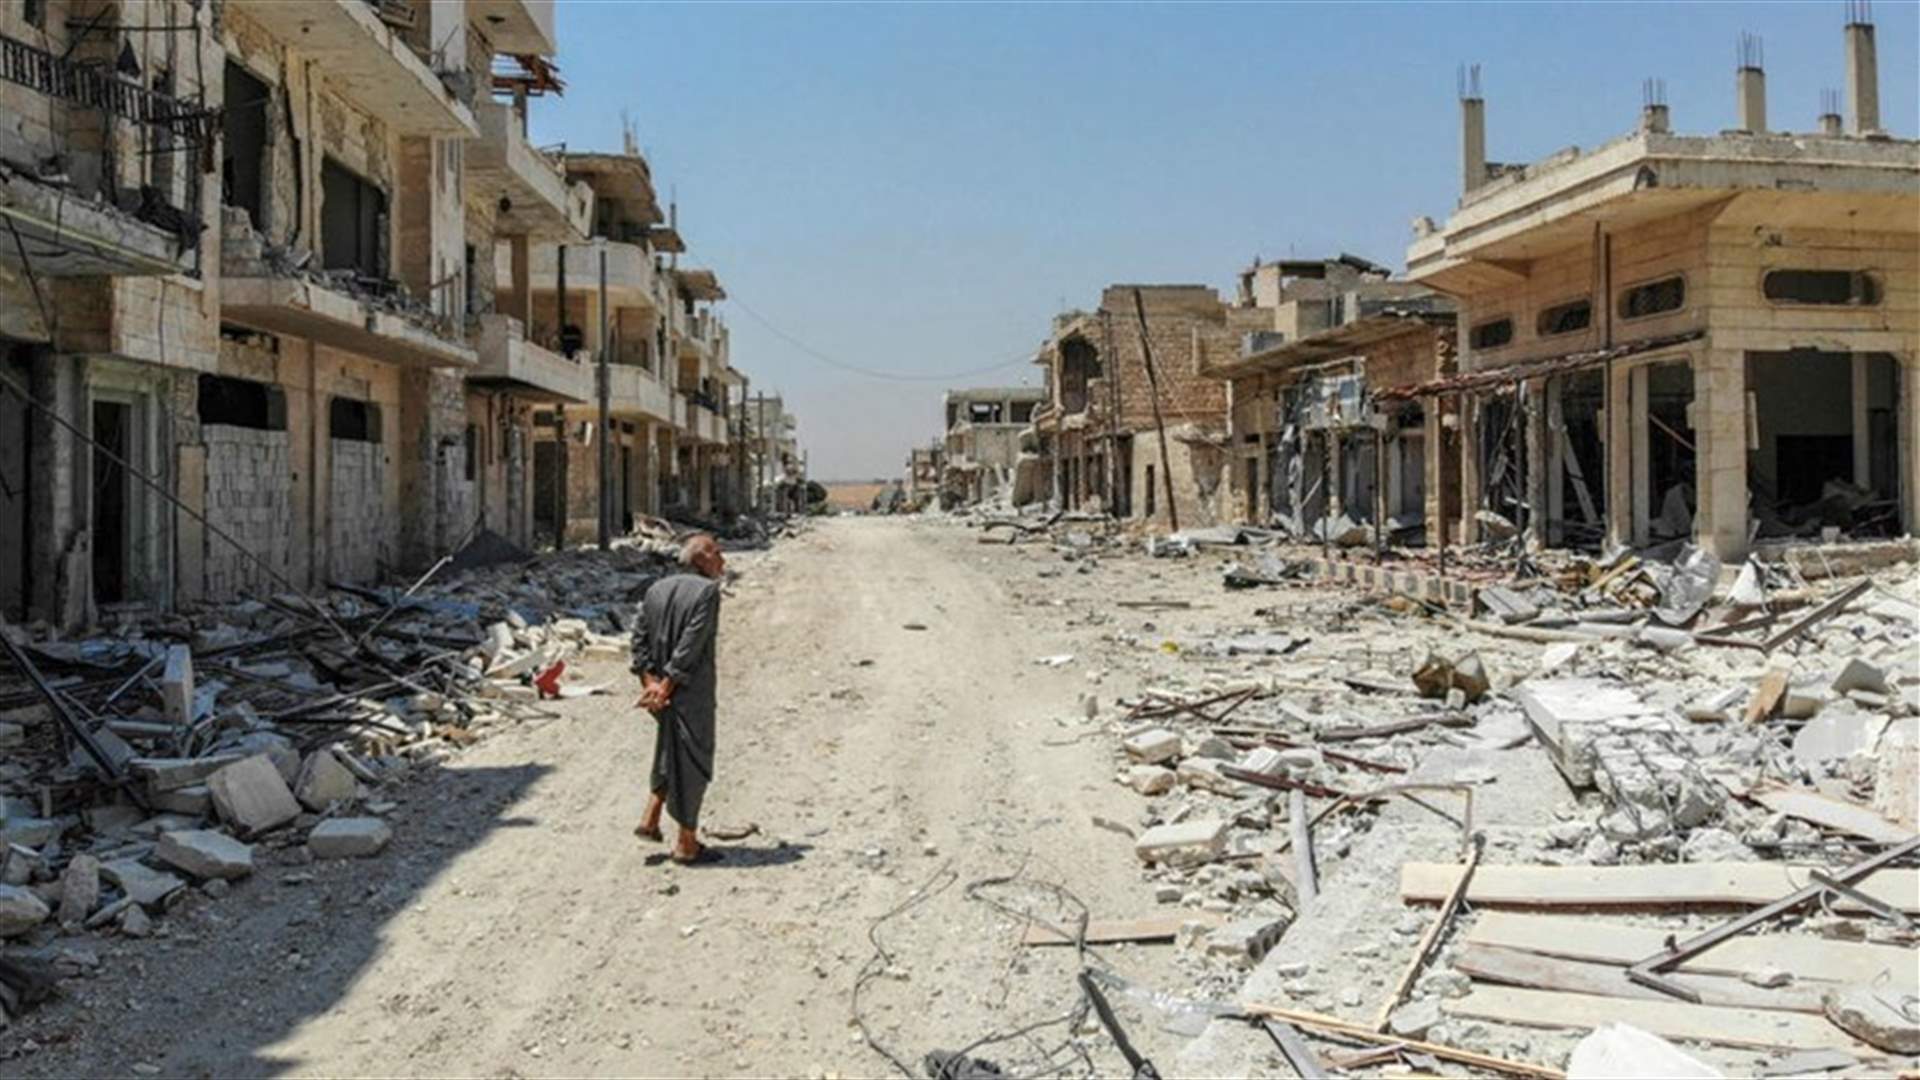 دمشق تعلن فتح معبر لخروج المدنيين من منطقة التصعيد في إدلب